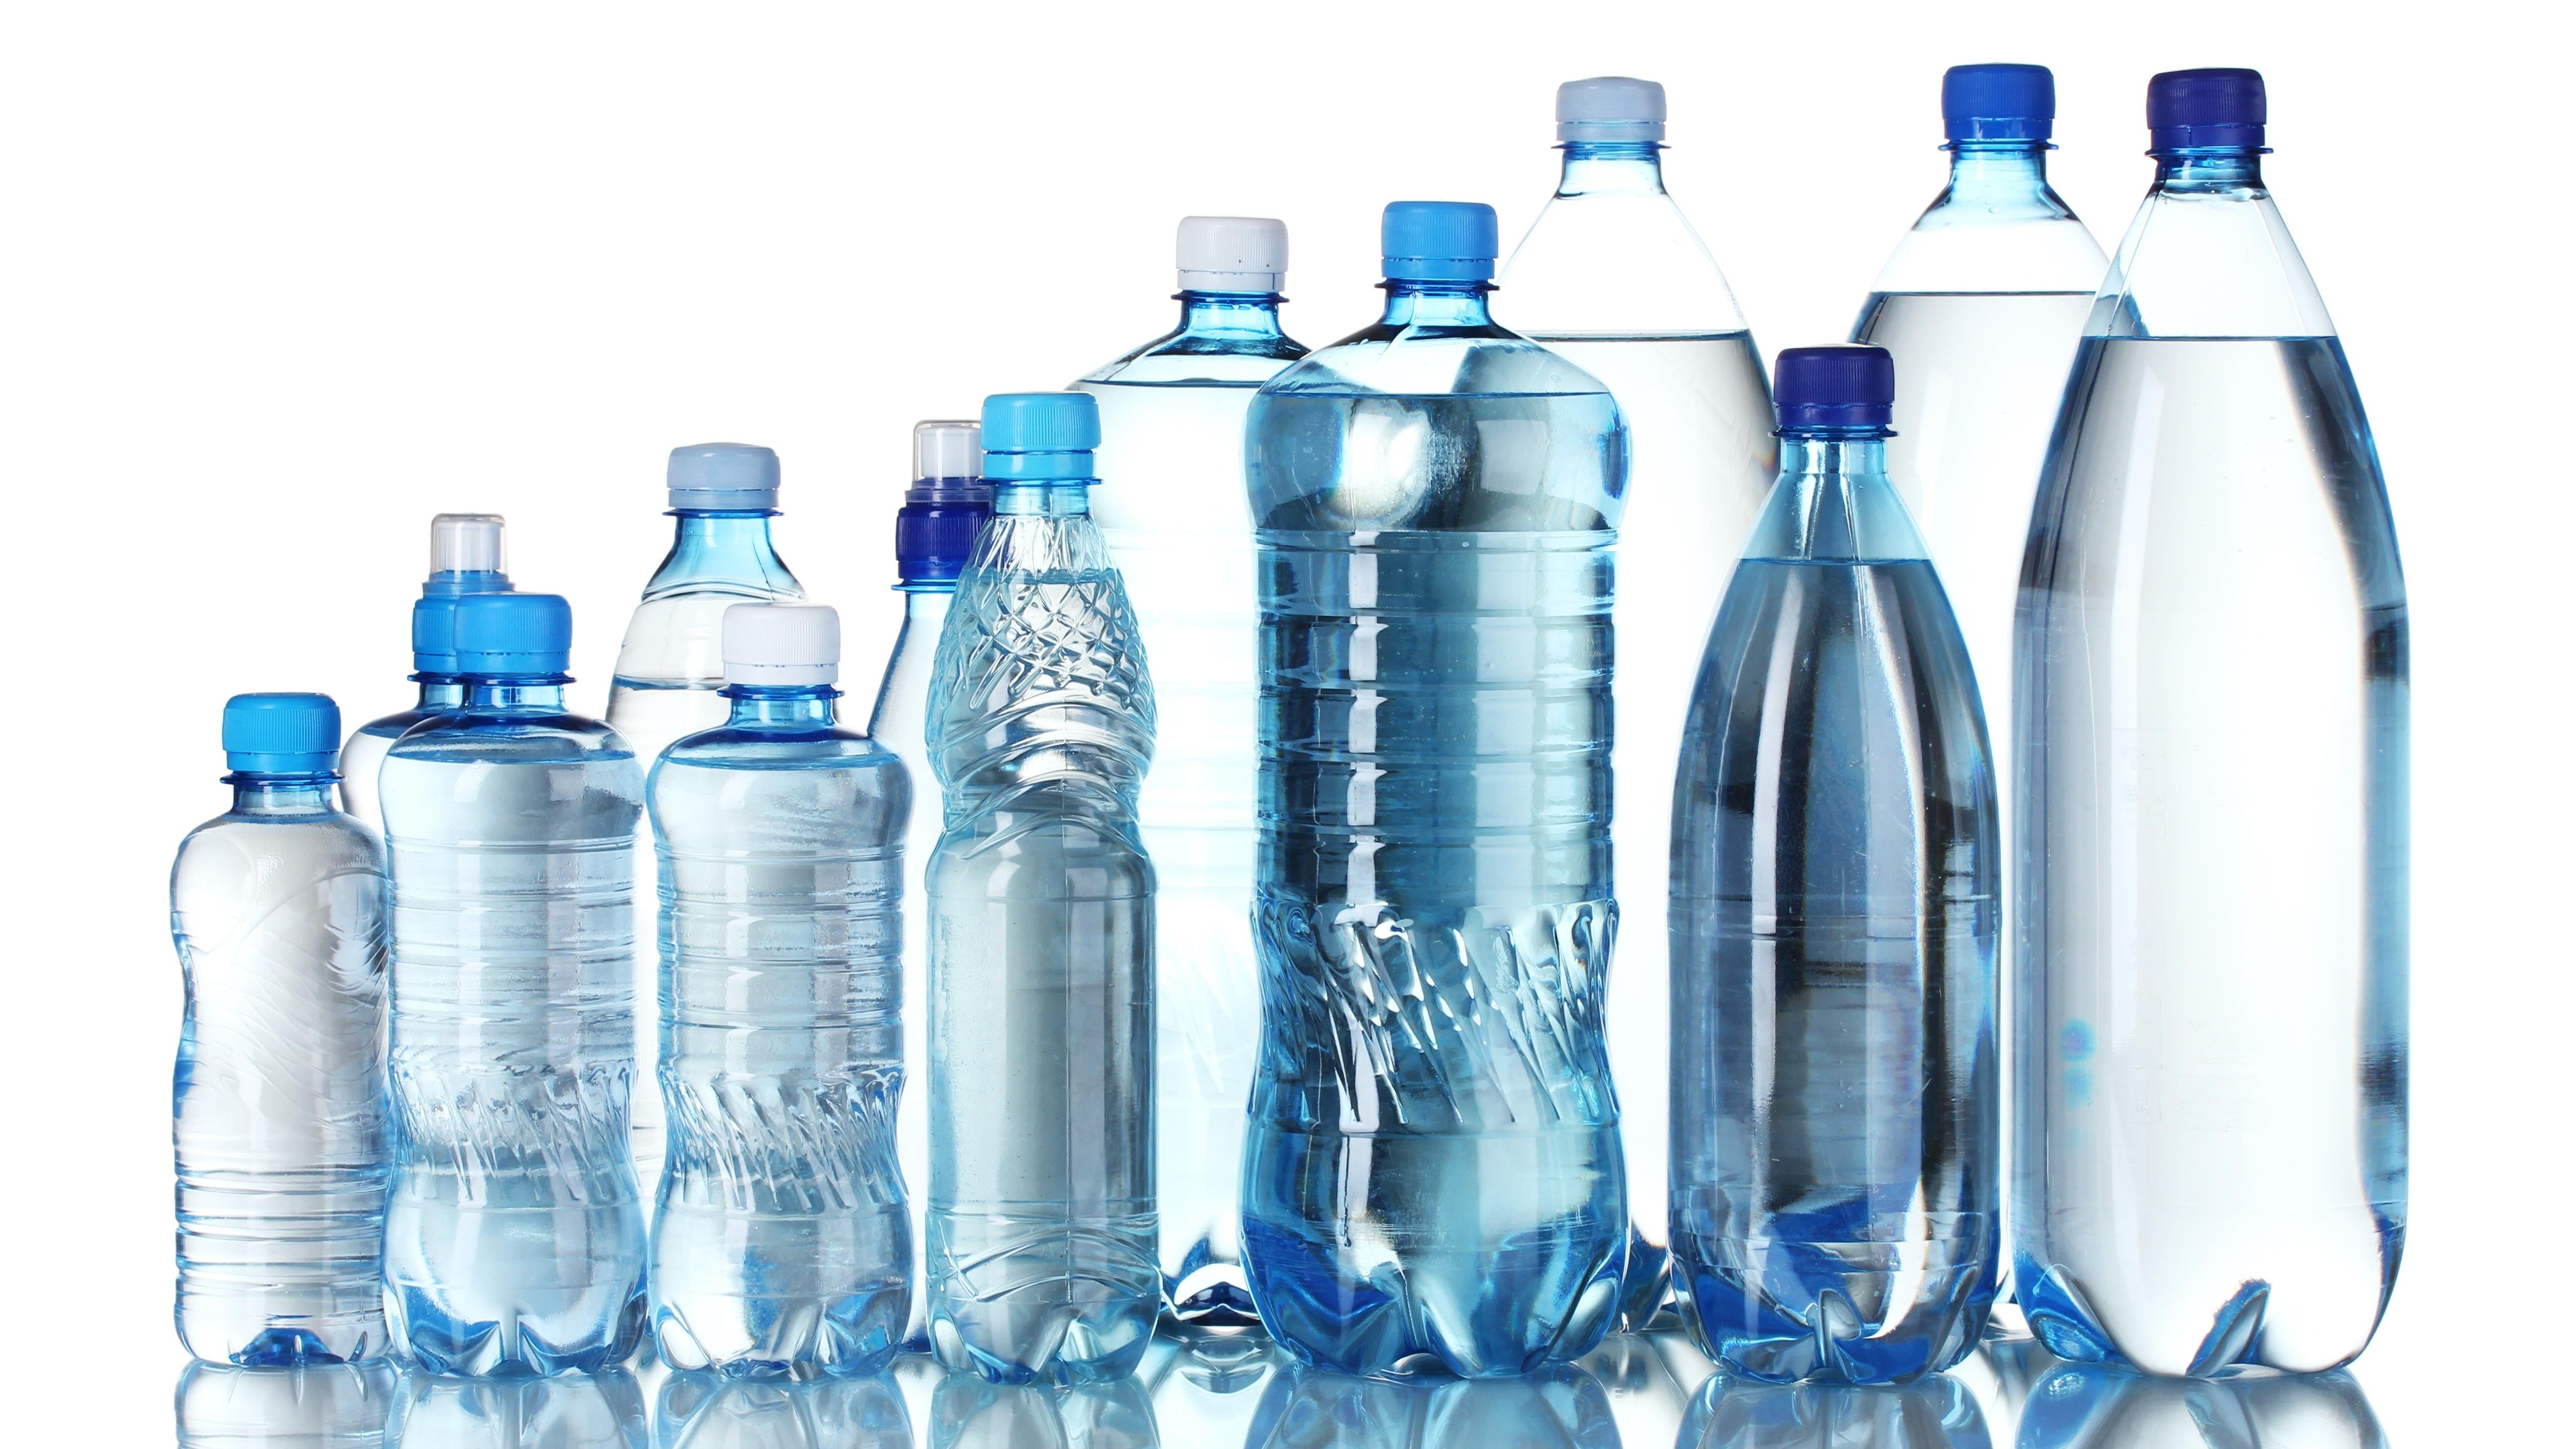 Badanie jakości wody butelkowanej. Wiadomo, która jest najlepsza